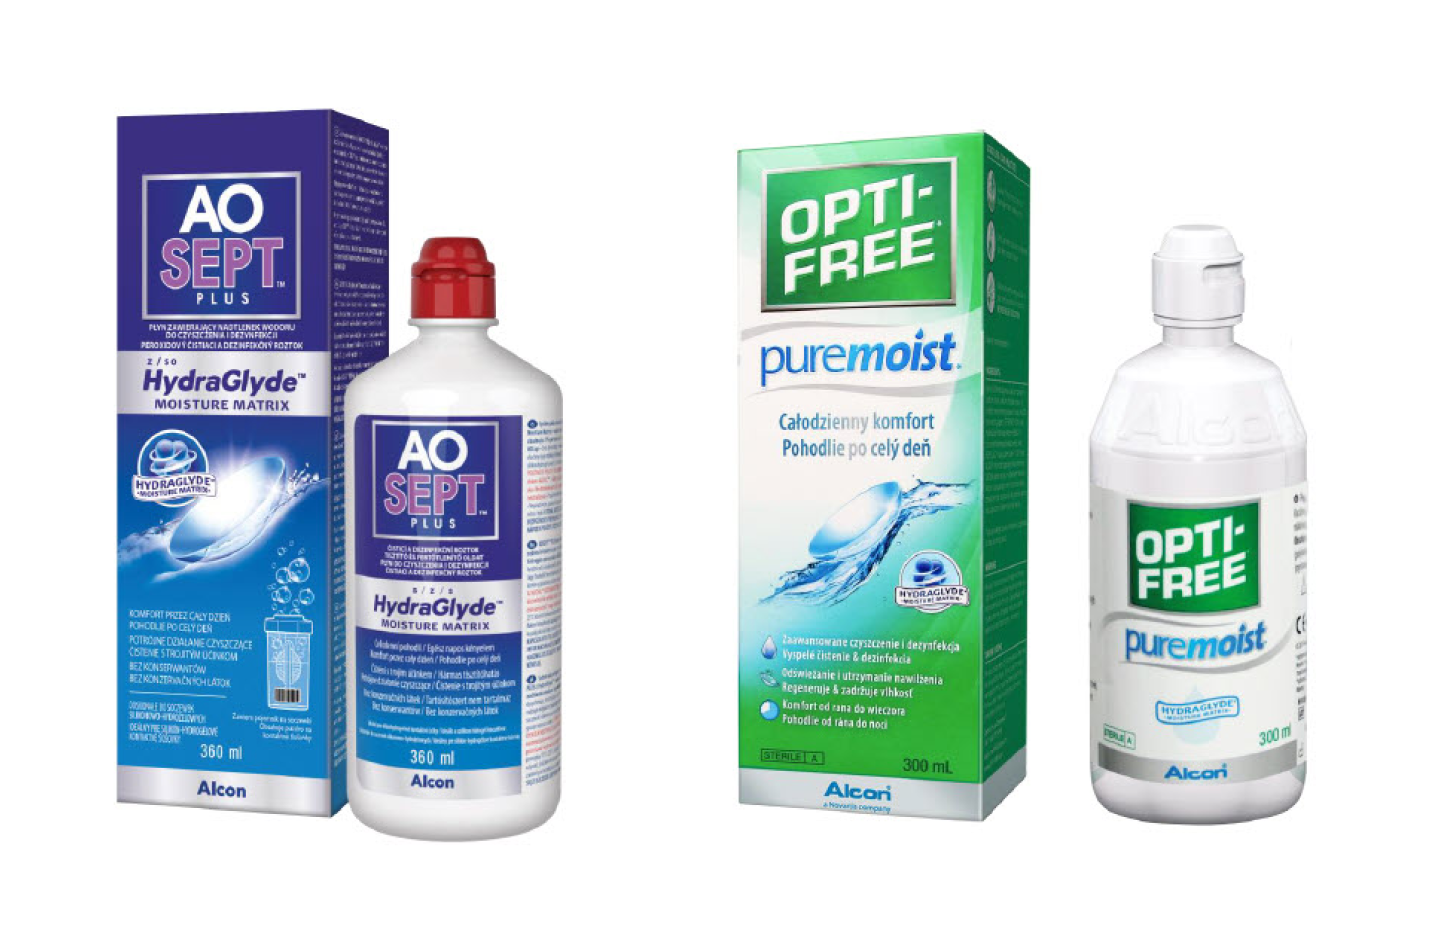 Produktová krabička a fľaštička AO Sept a Opti-free Puremoist - roztoky pre kontaktné šošovky od Alconu